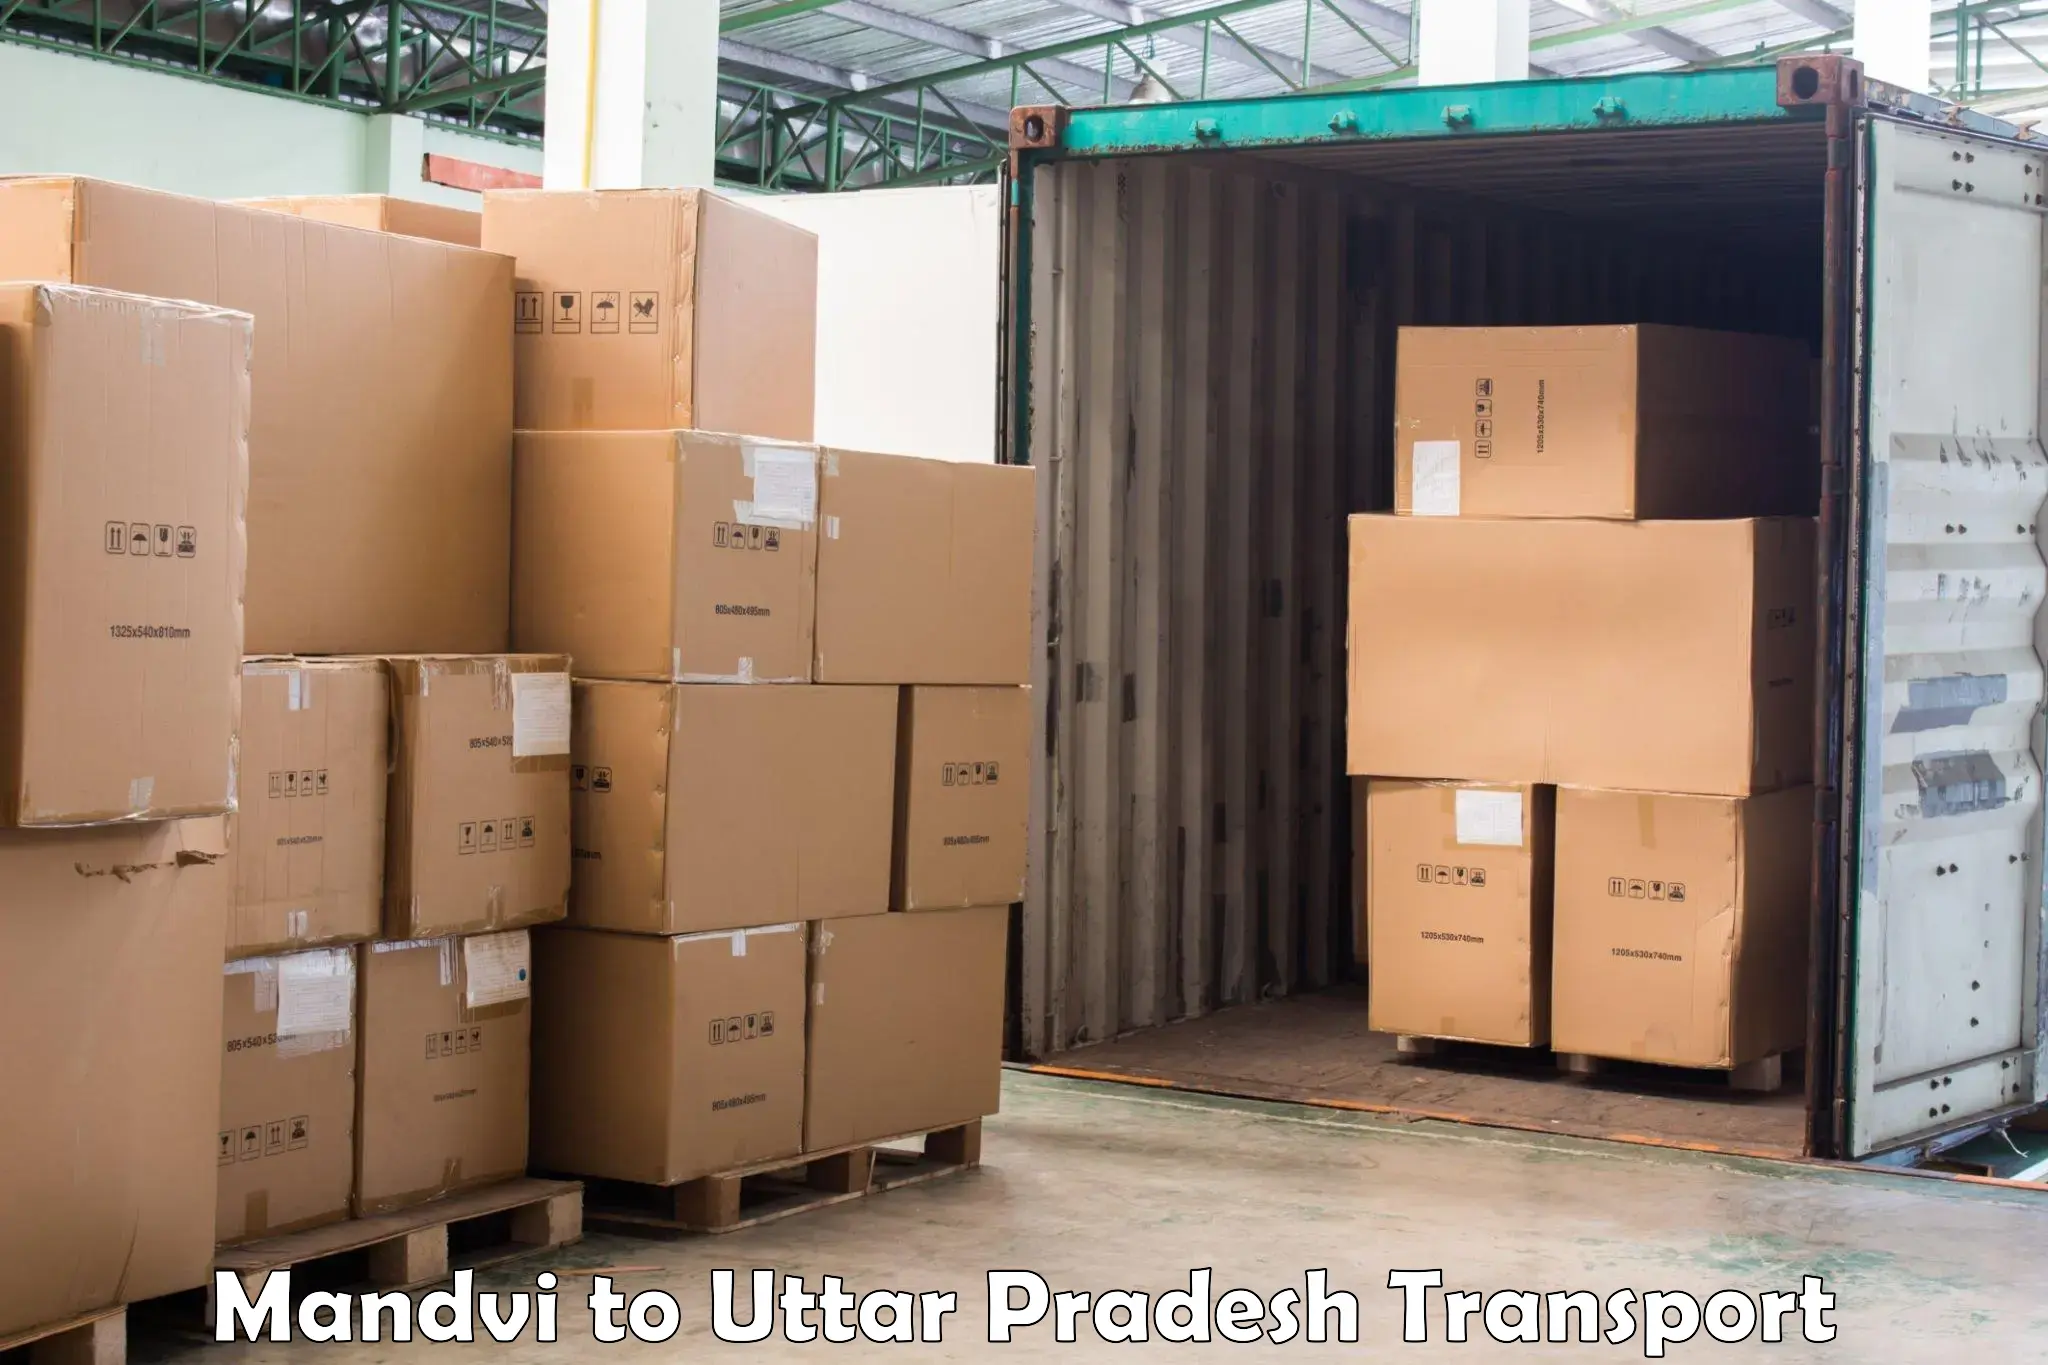 International cargo transportation services Mandvi to Kulpahar